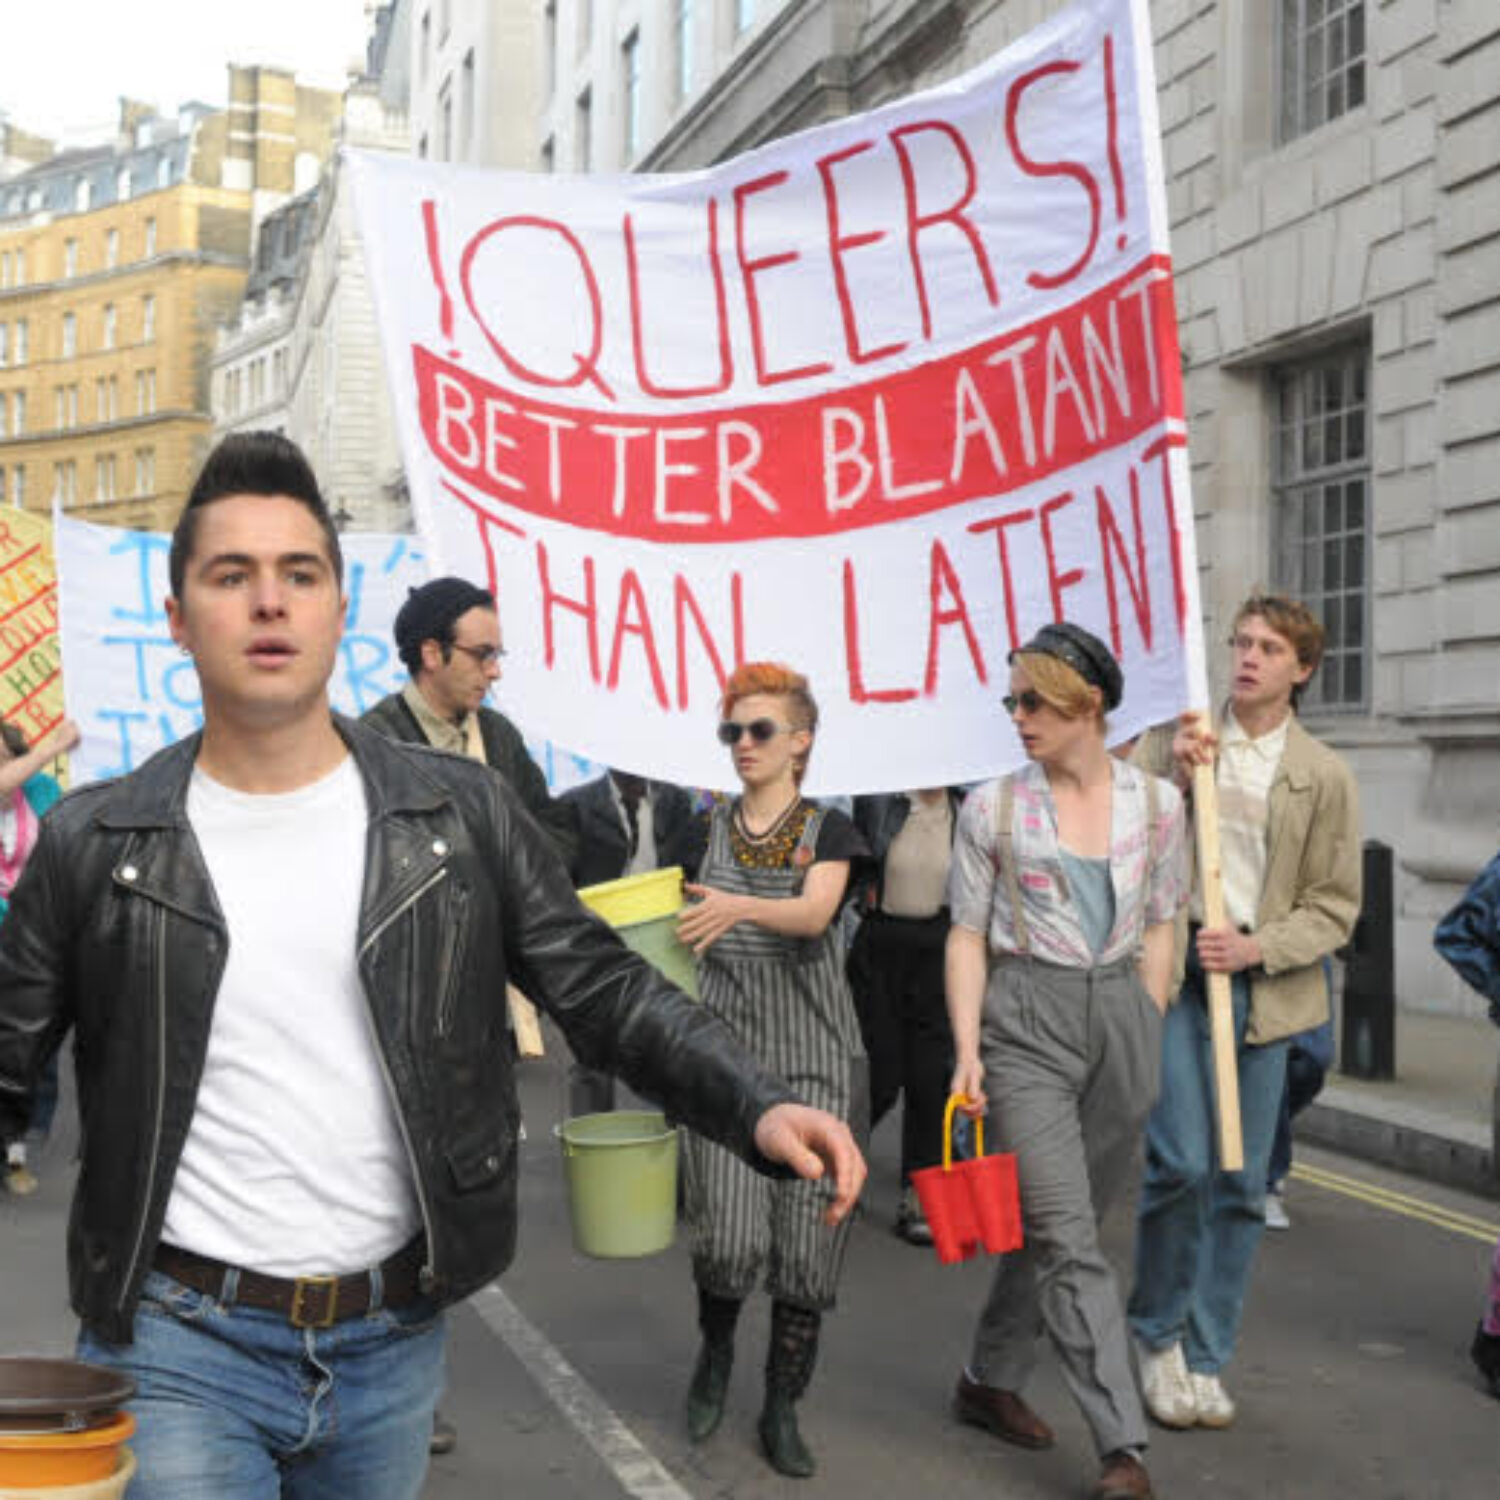 Eine Demonstration in der Innenstadt. Ein Banner mit der Aufschrift "!QUEERS! Better blatant than latent" wird von jungen Menschen hochgehalten.